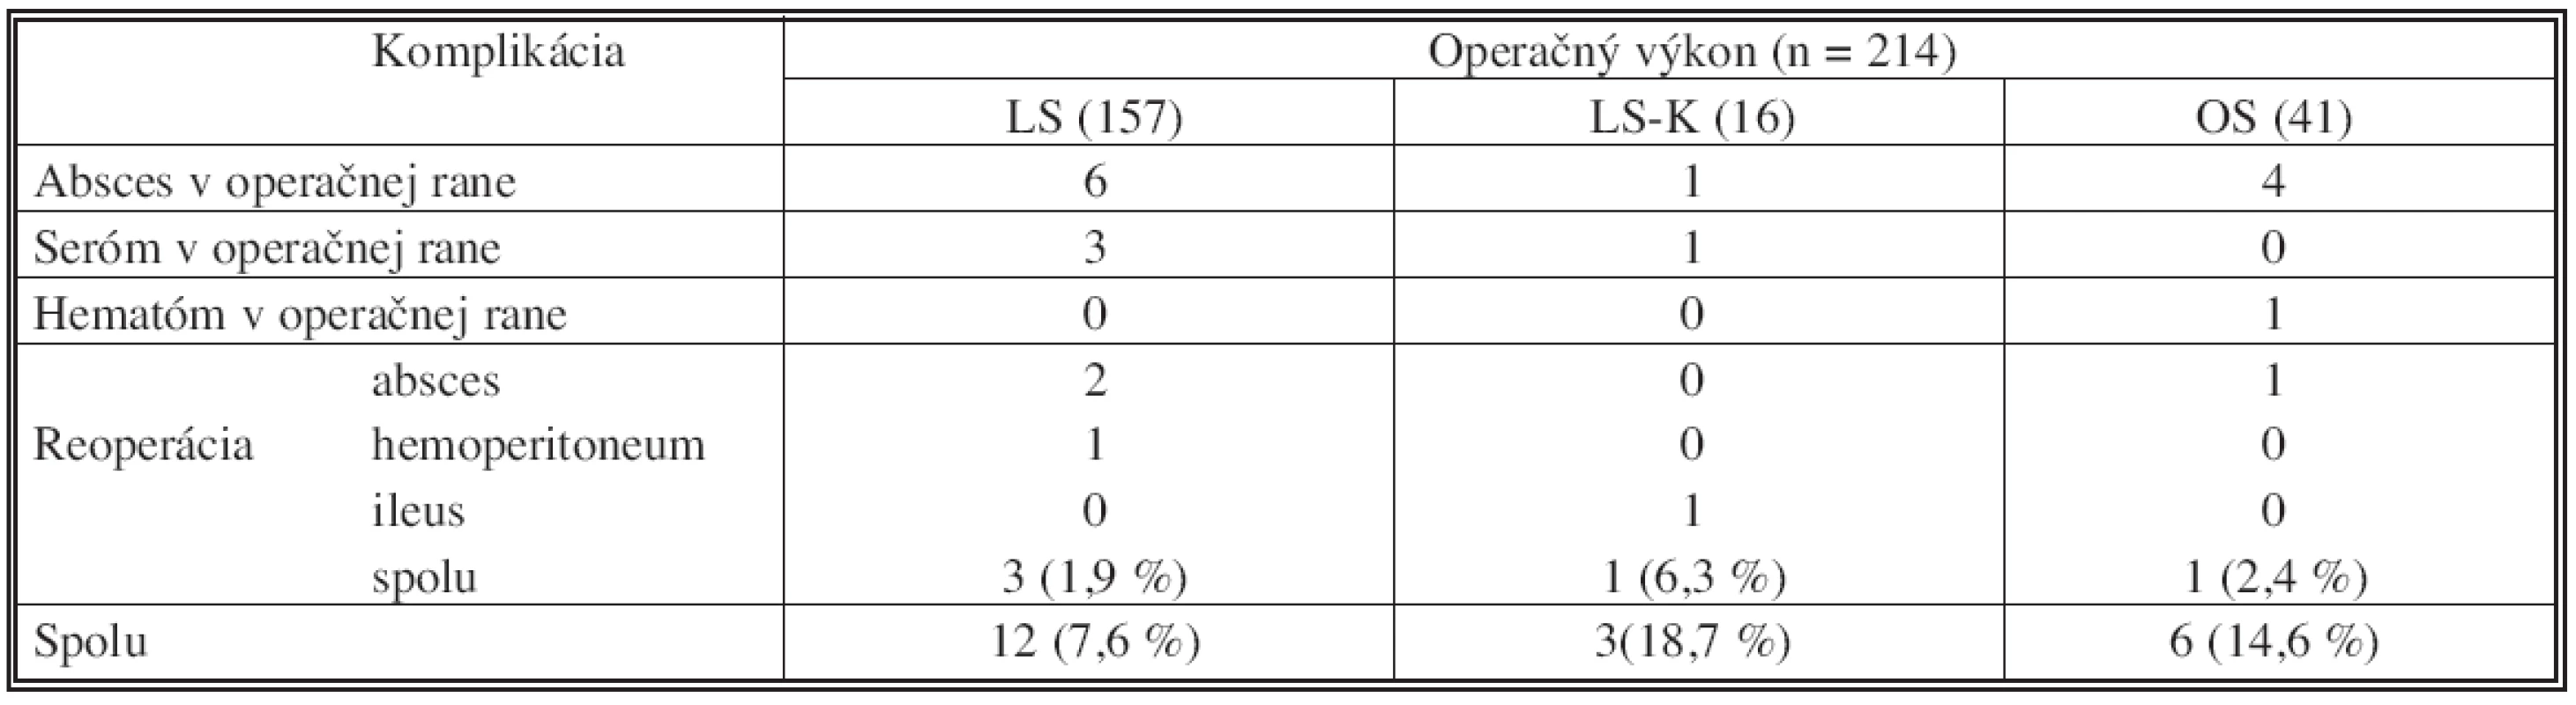 Rozdelenie pooperačných komplikácií v závislosti od operačného výkonu, n = 214
Tab. 3. Classification of postoperative complications according to procedure, n = 214